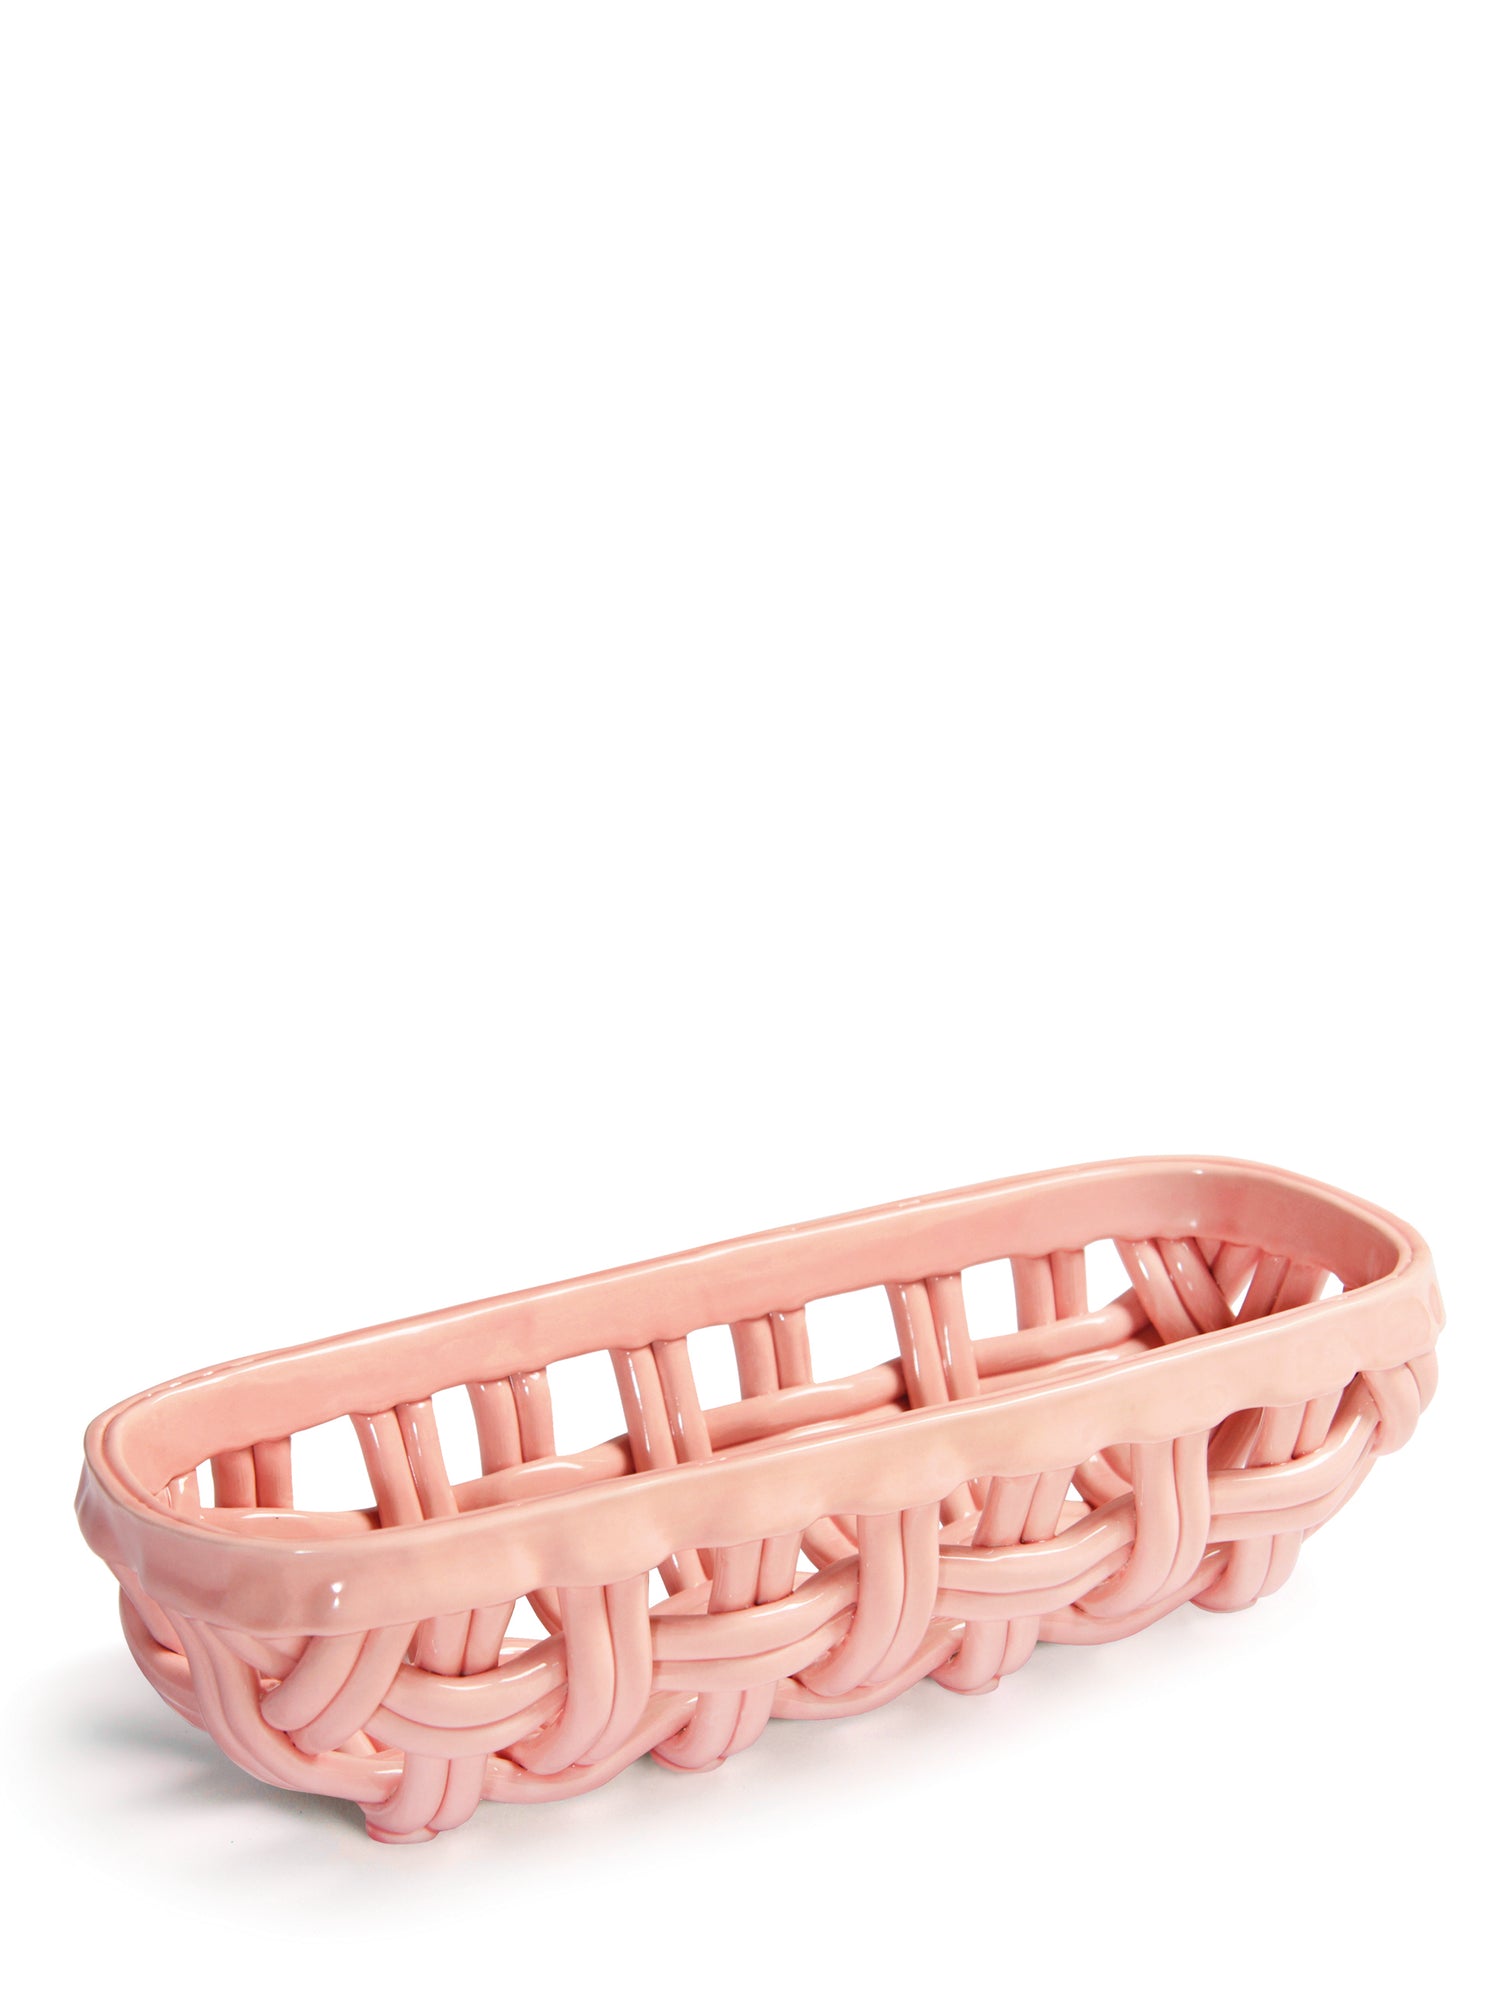 Basket baguette (30 cm), pink